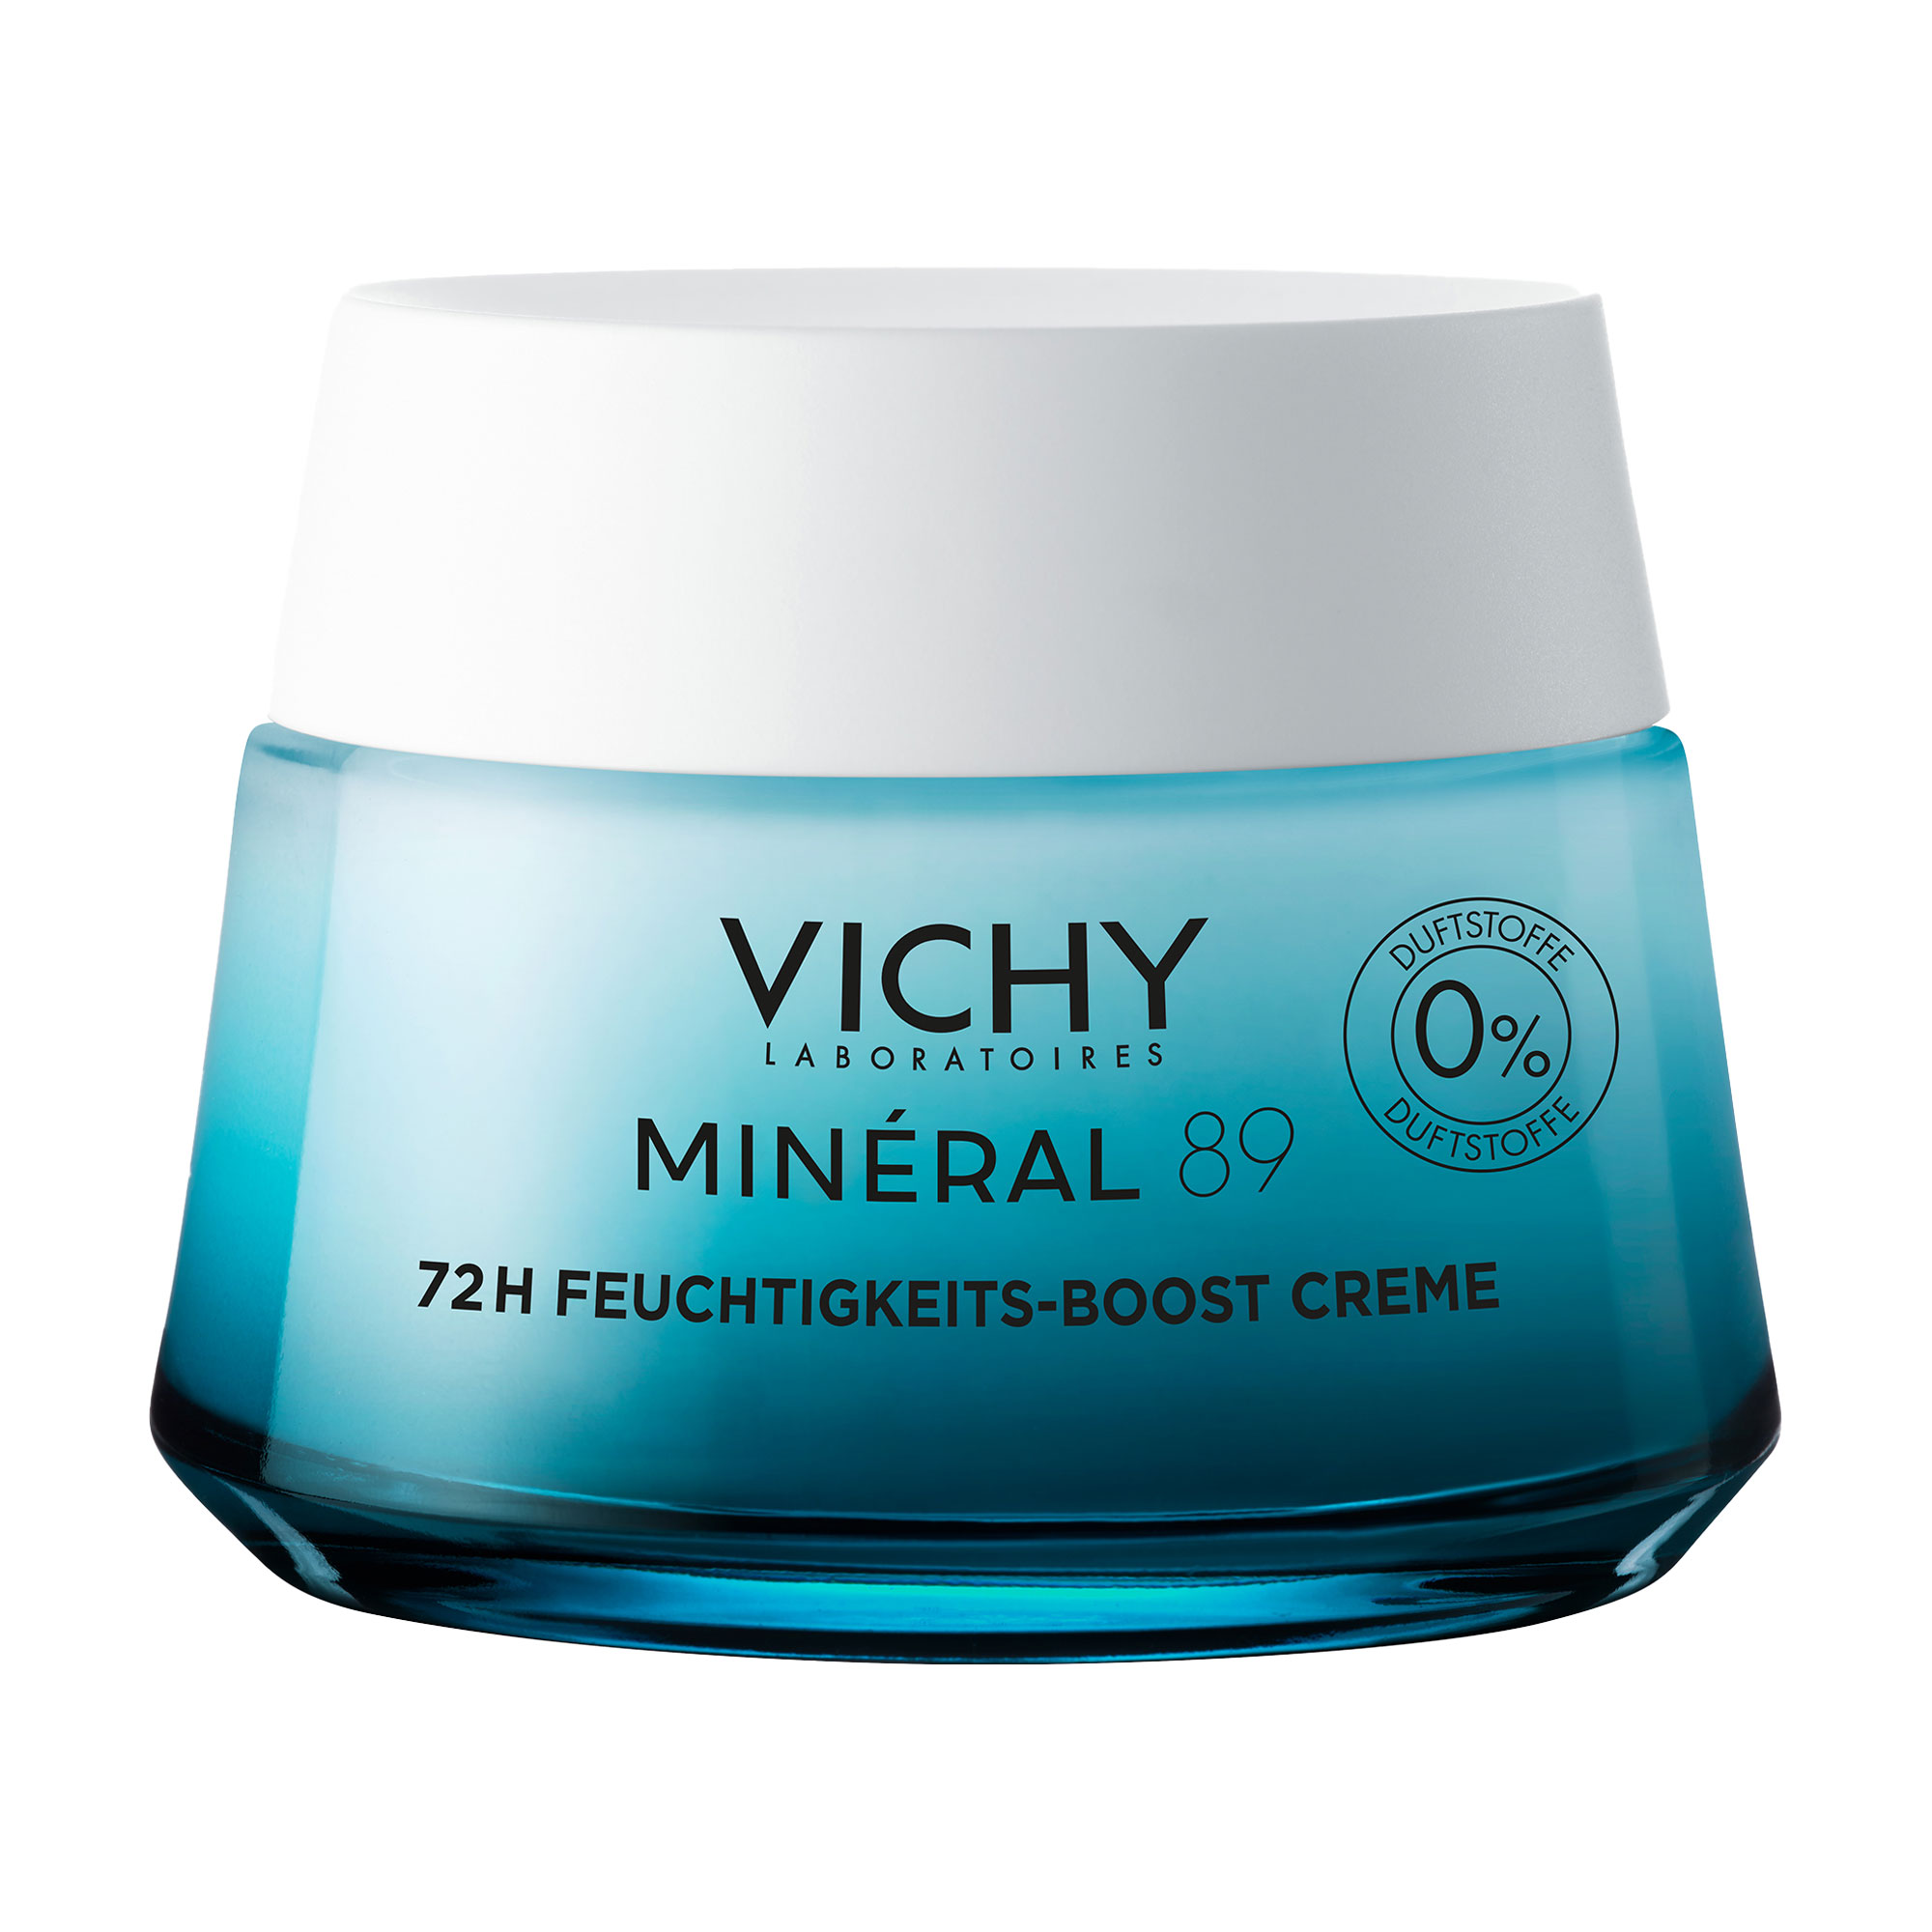 Die Mineral 89 Creme von Vichy spendet der Haut dank innovativen Wirkstoffkomplex bis zu 72 Stunden lang intensive Feuchtigkeit und sorgt für einen natürlichen Glow.